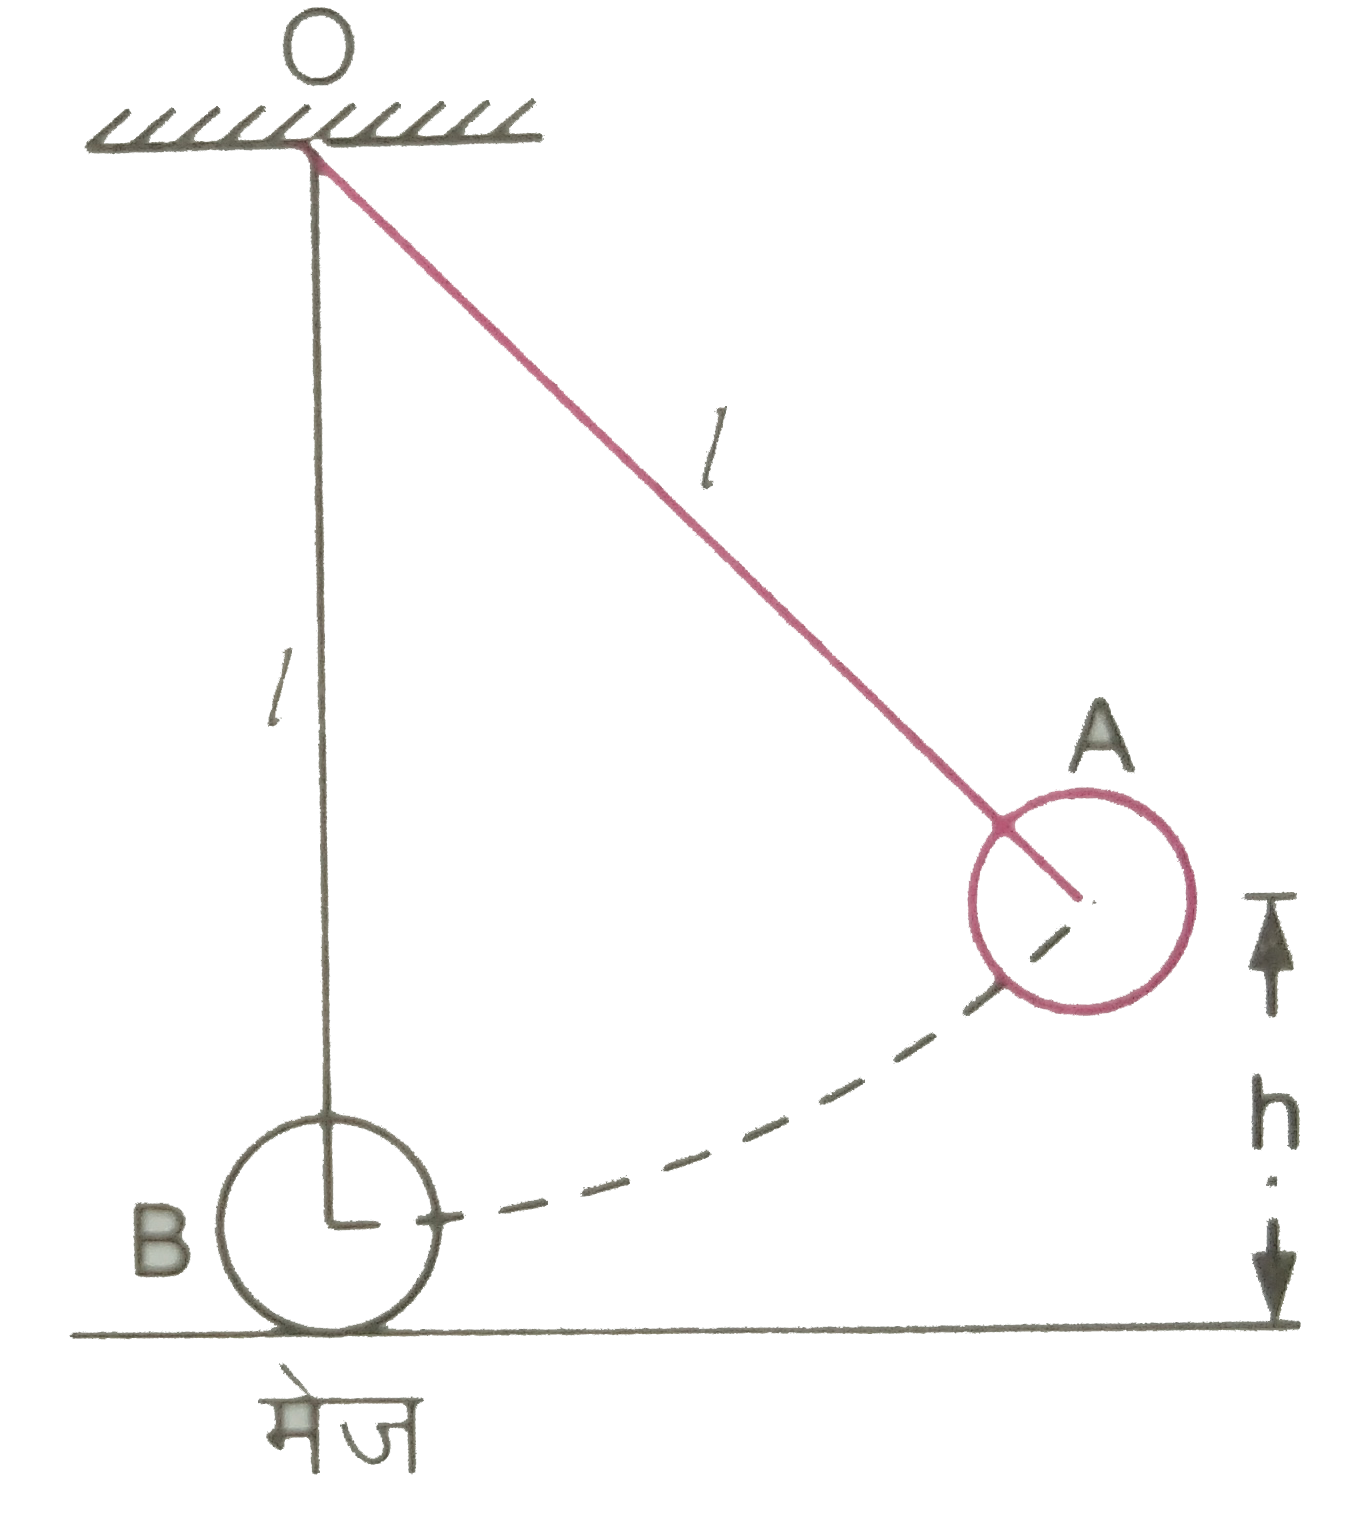 चित्र 7.32 में द्रव्यमान m की एक गेंद B, किसी आधार O से लम्बाई l के धागे में बाँधकर मेज पर रखी है तथा उसी आधार से लम्बाई का तथा समान द्रव्यमान m का गोलक वाला एक सरल लोलक प्रारम्भ में मेज से ऊँचाई h पर विस्थापित स्थिति A पर प्रदर्शित है | अब यदि लोलक को छोड़ दिया जाता है तो संघट्ट के पश्चात गेंद B कितनी ऊँचाई तक ऊपर जाएगी ? संघट्ट को प्रत्यास्थ मानिए |